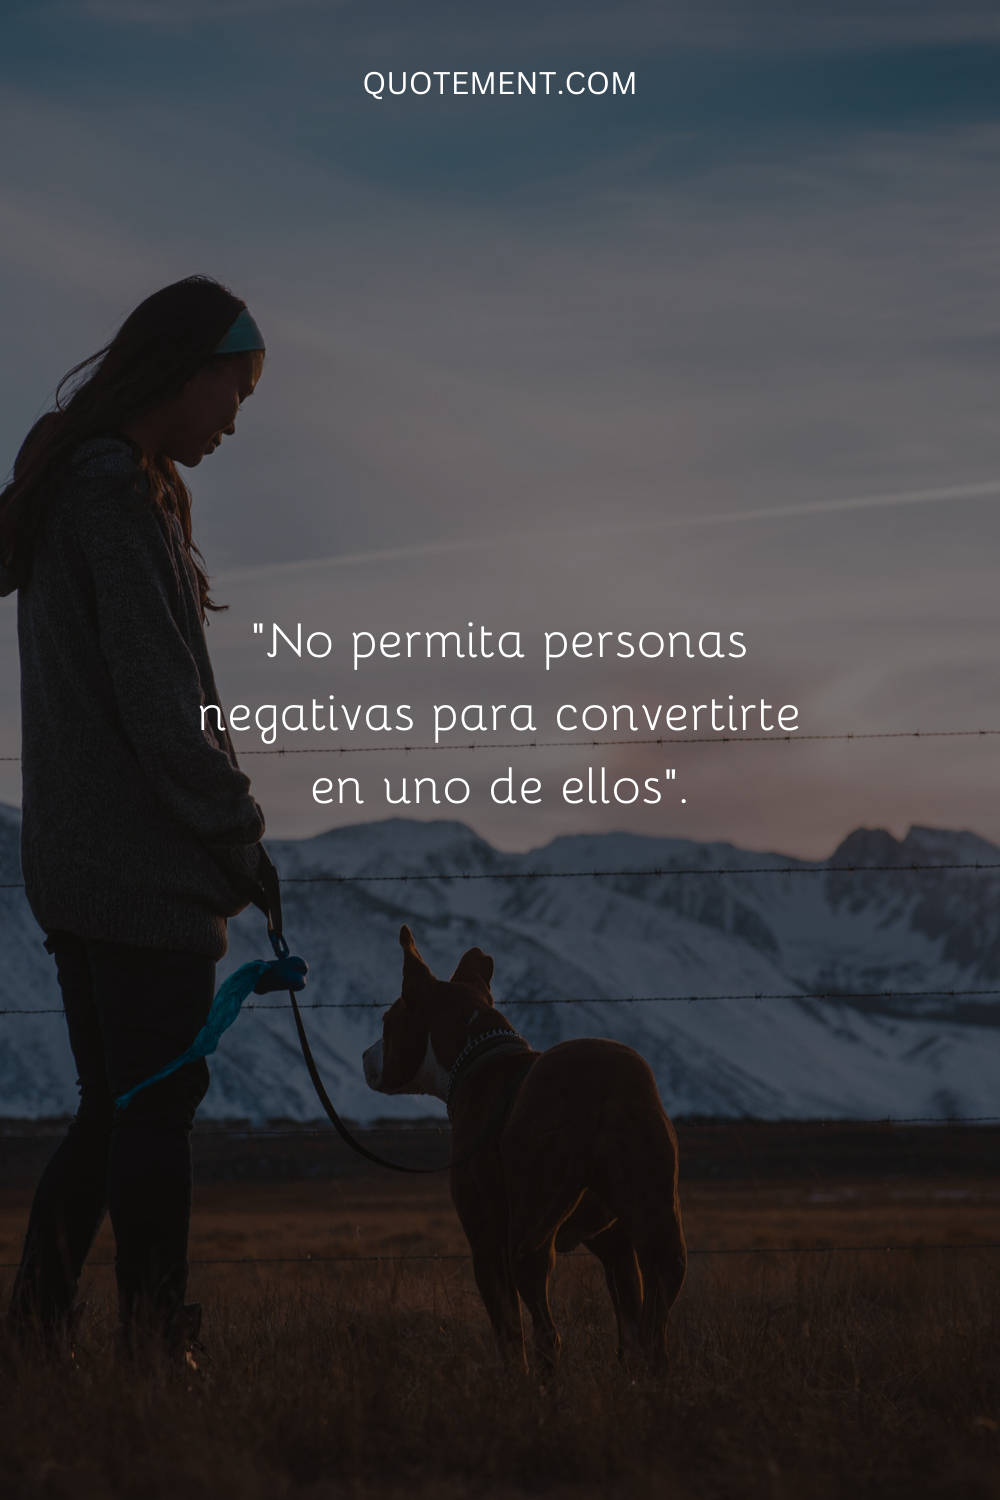 "No permitas que la gente negativa te convierta en uno de ellos".